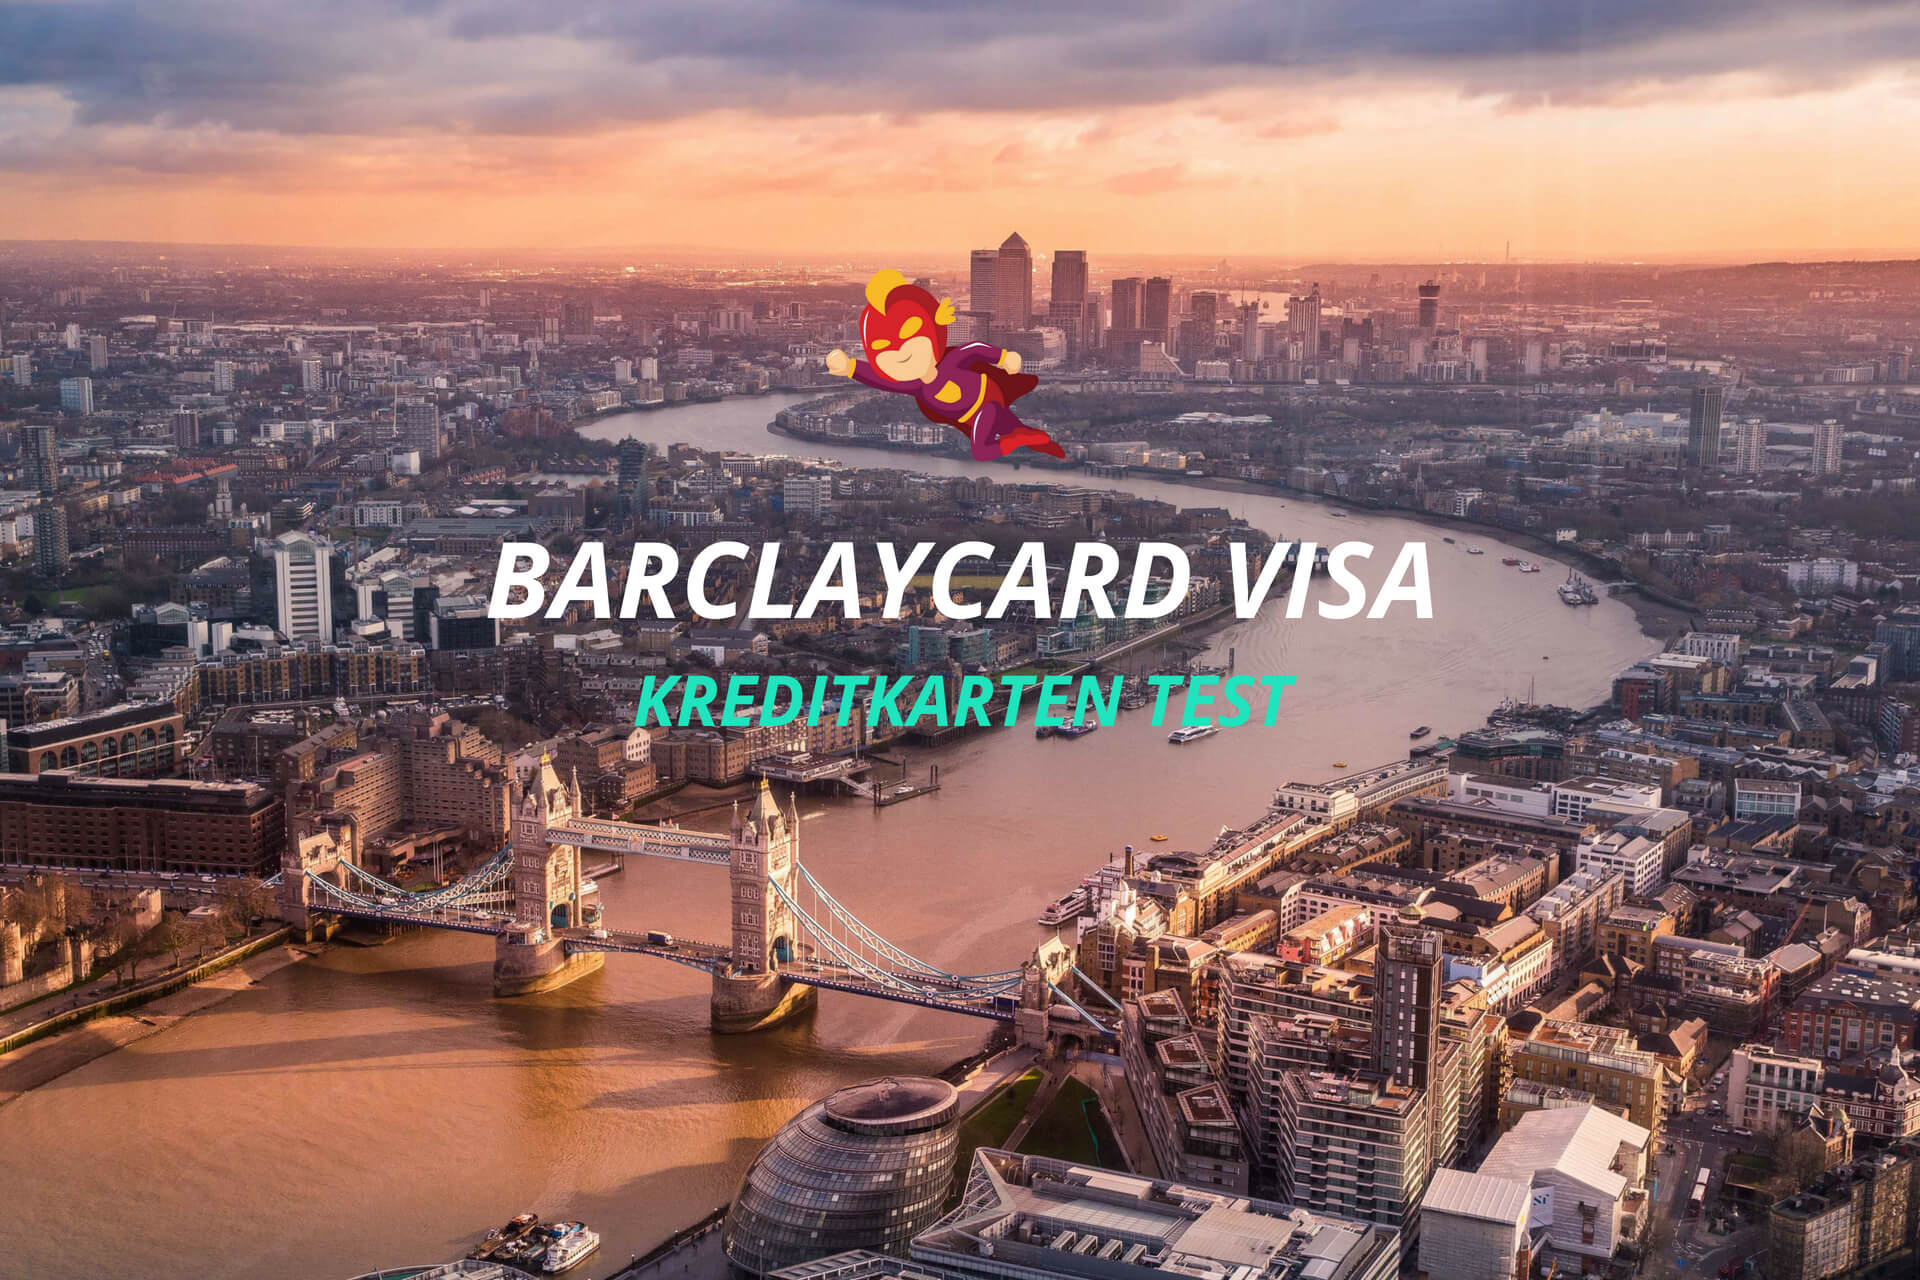 Barclaycard Visa Test - Preise, Konditionen, Reiseeinsatz - Finanzhelden.org